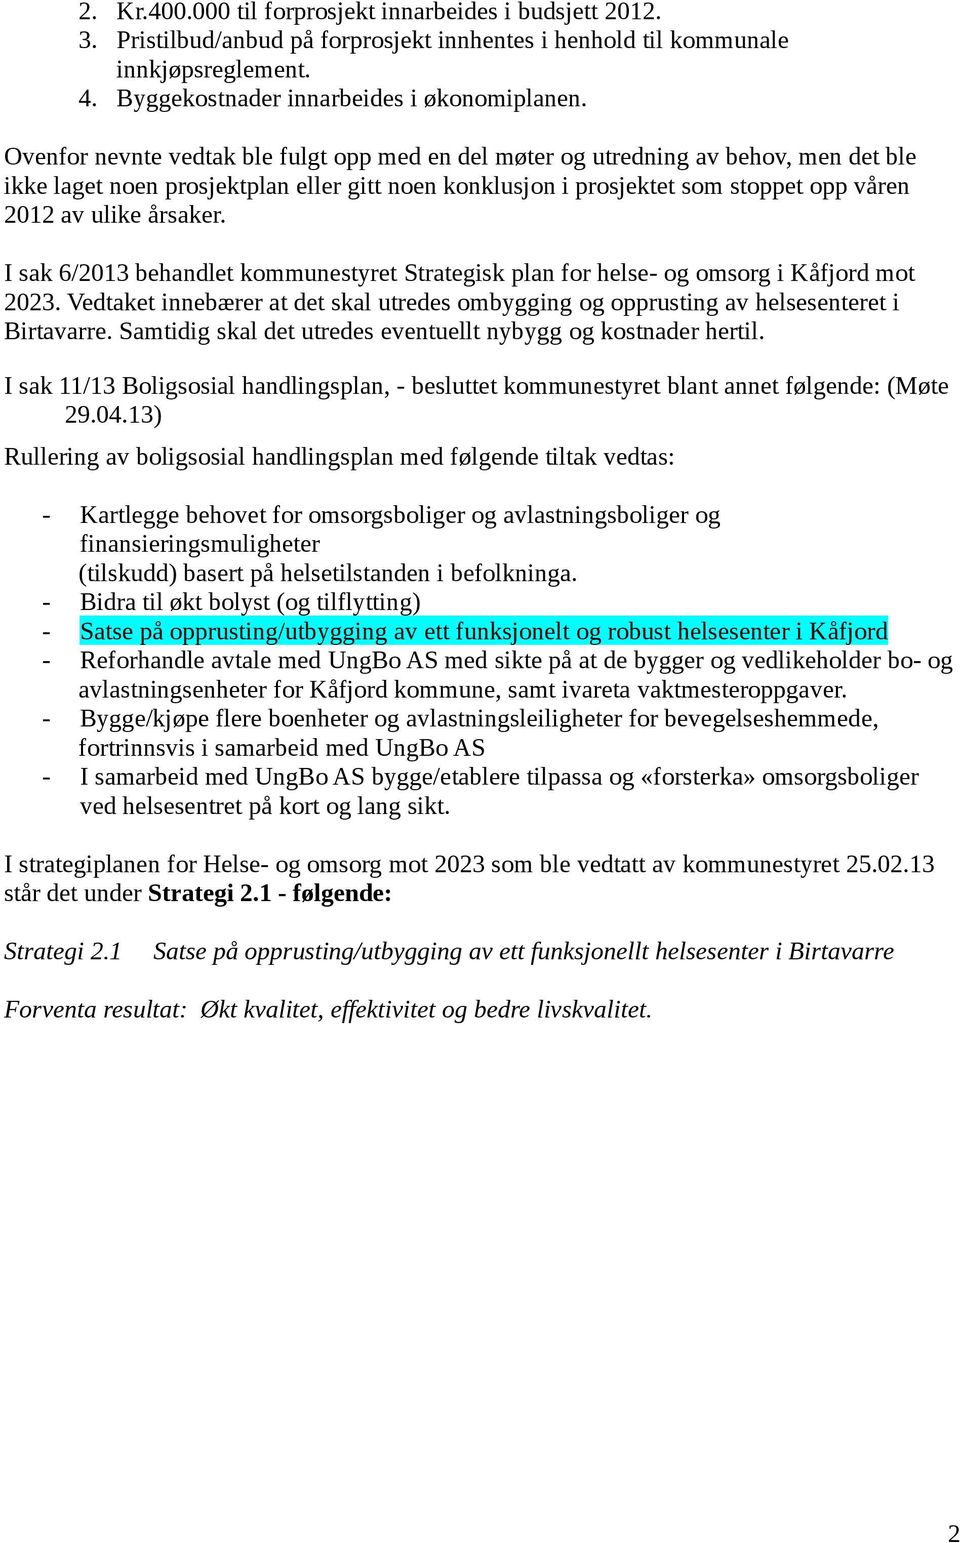 årsaker. I sak 6/2013 behandlet kommunestyret Strategisk plan for helse- og omsorg i Kåfjord mot 2023. Vedtaket innebærer at det skal utredes ombygging og opprusting av helsesenteret i Birtavarre.